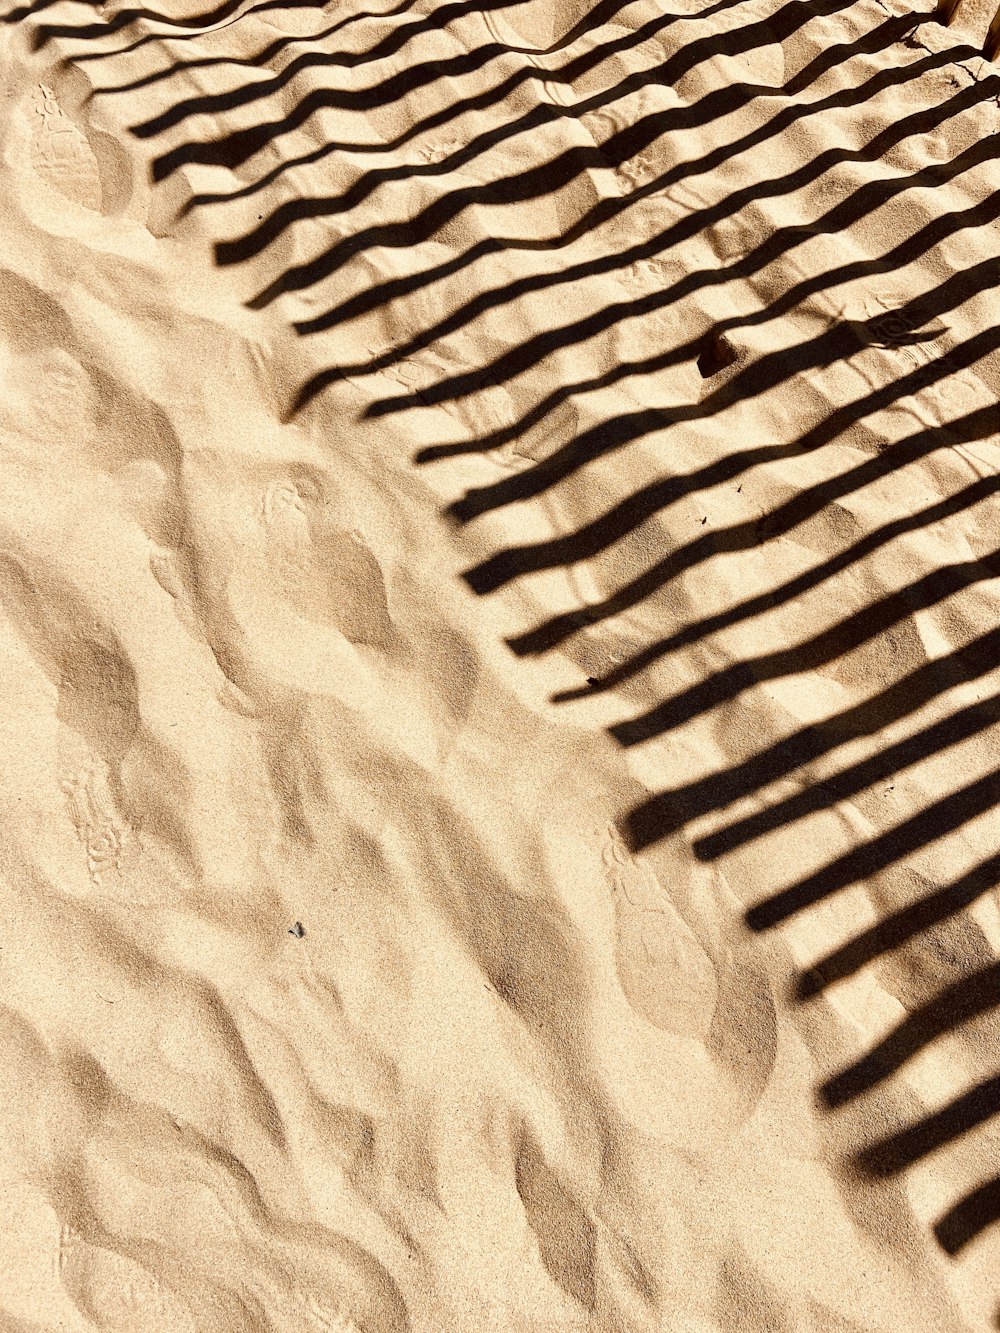 砂浜のベンチの影